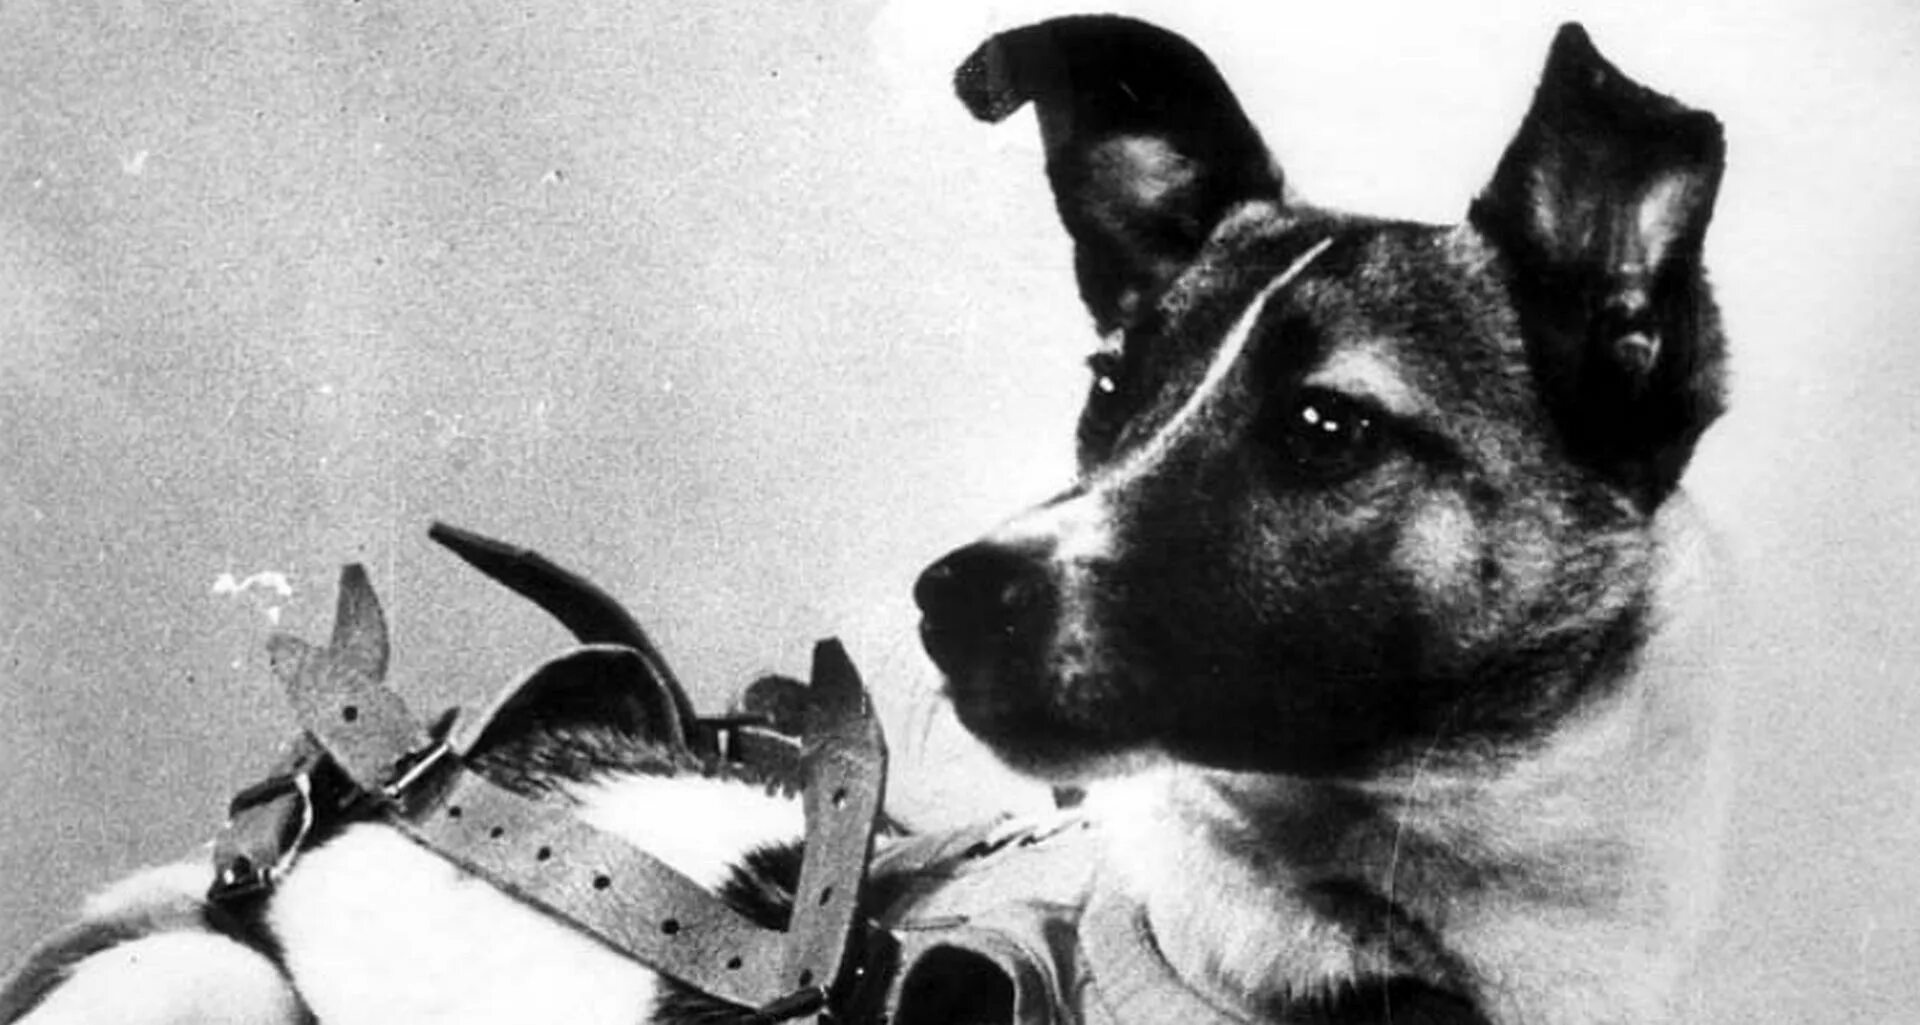 Самая первая собака полетевшая в космос. Первая собака в космосе лайка. Собака лайка на спутнике 2. Спутник-2 с собакой лайкой на борту. Второй искусственный Спутник земли с собакой лайкой.